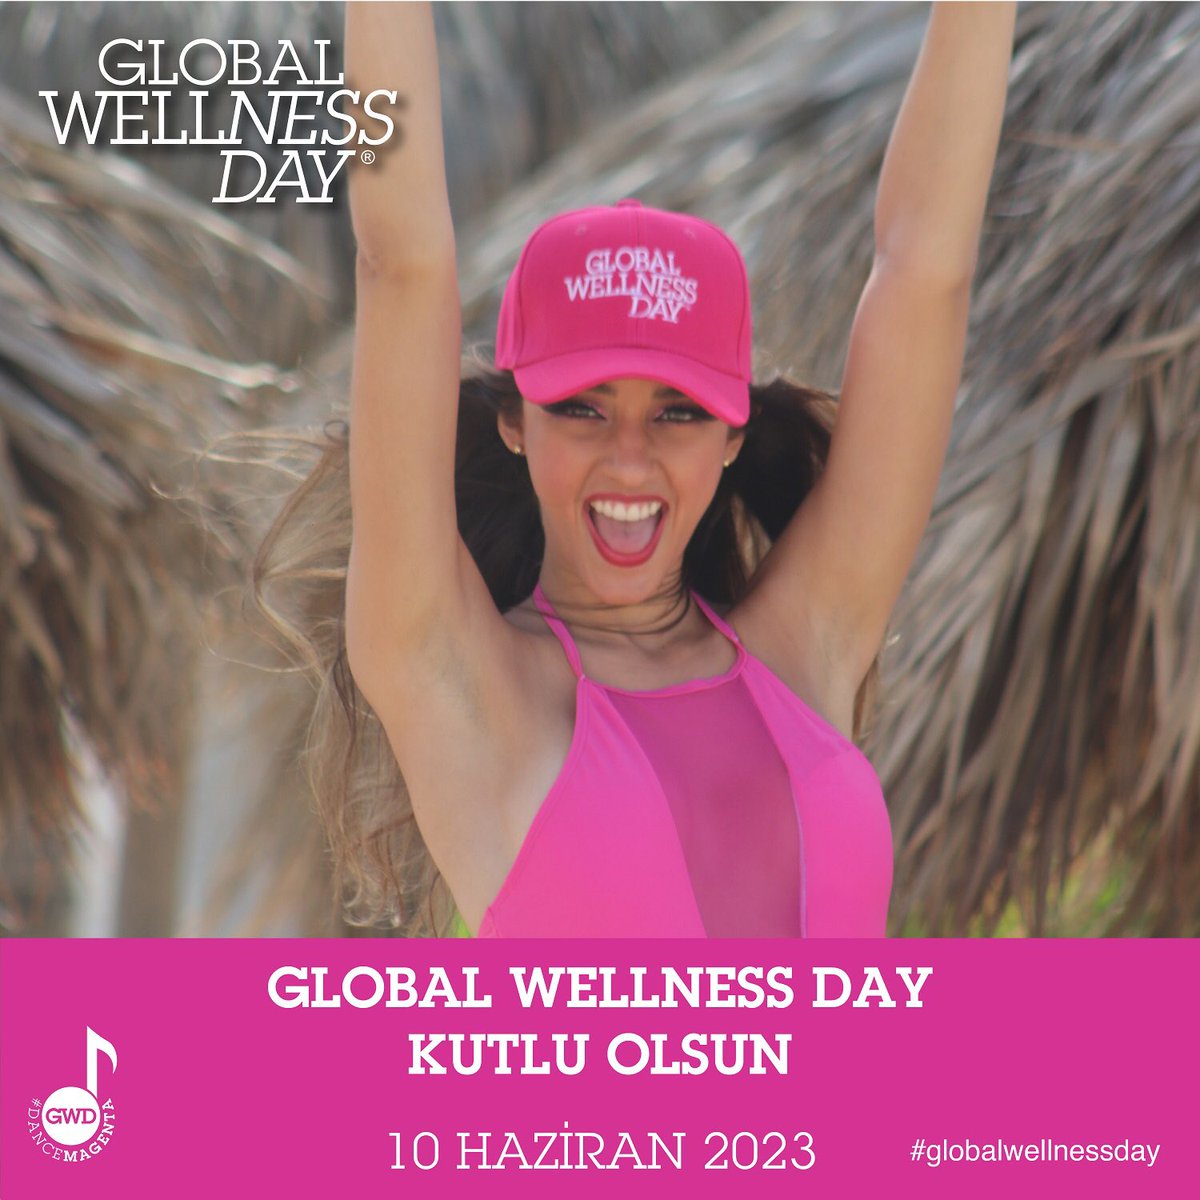 Bugün Global Wellness Day!!! 🥳

Unutmayın “Bir gün, tüm yaşamınızı değiştirebilir!” 🍏

#globalwellnessday #globalwellnessdayturkey #dancemagenta  #wellness #gwd2023